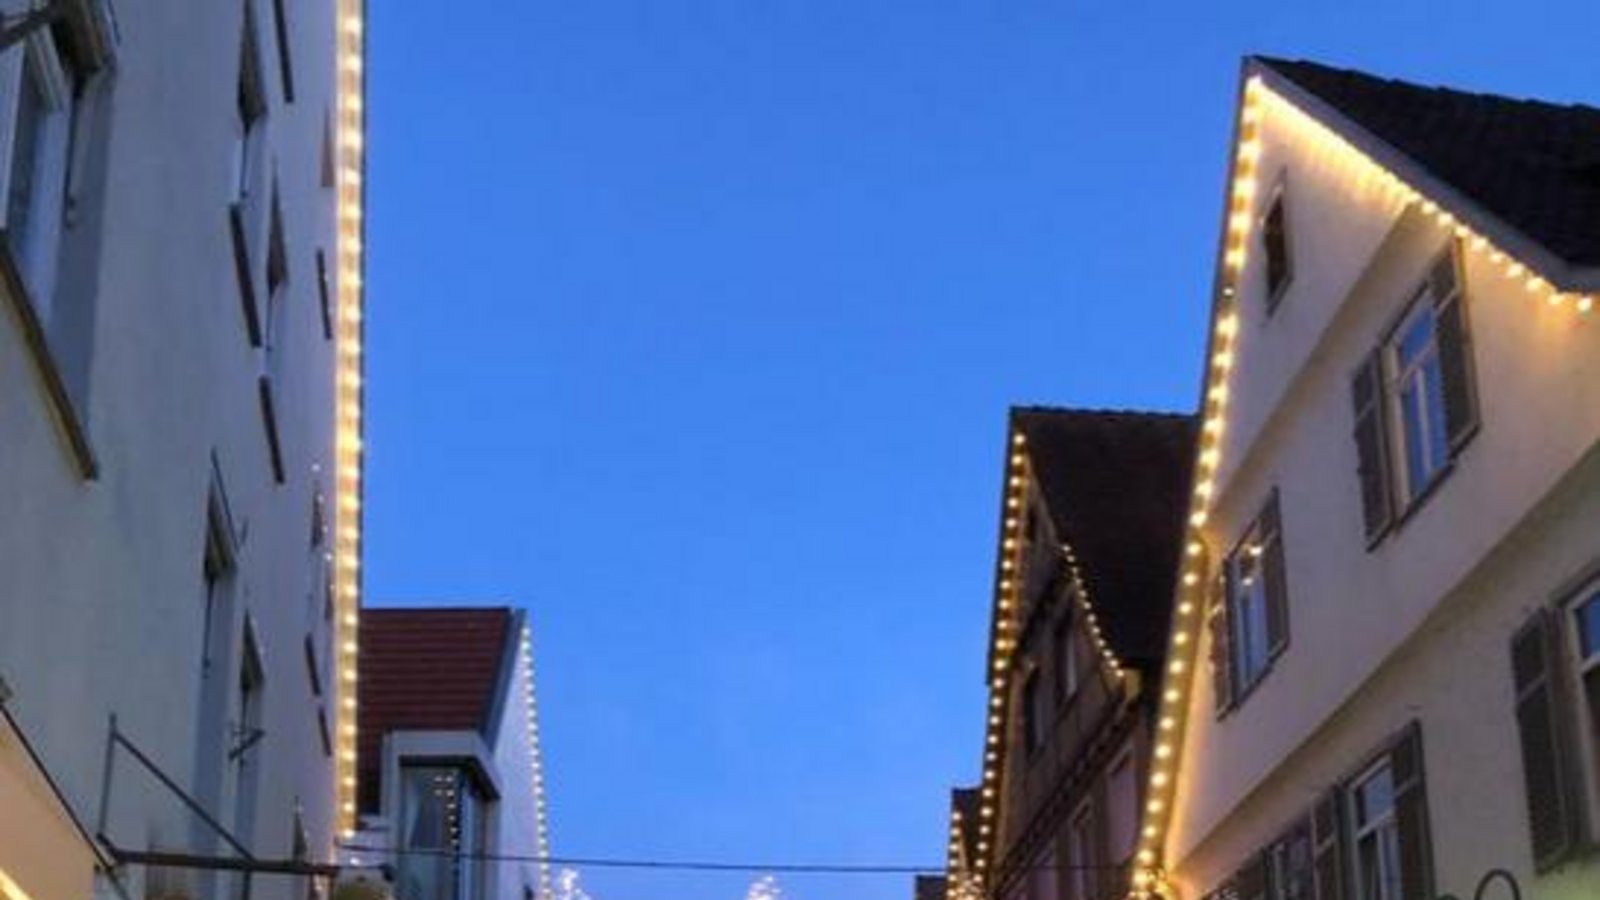 Eine erste neue Lichterkette hatte das City-Management im Advent 2021 schon aufgehängt. In diesem Jahr sollen Sterne dazukommen. Foto: Archiv